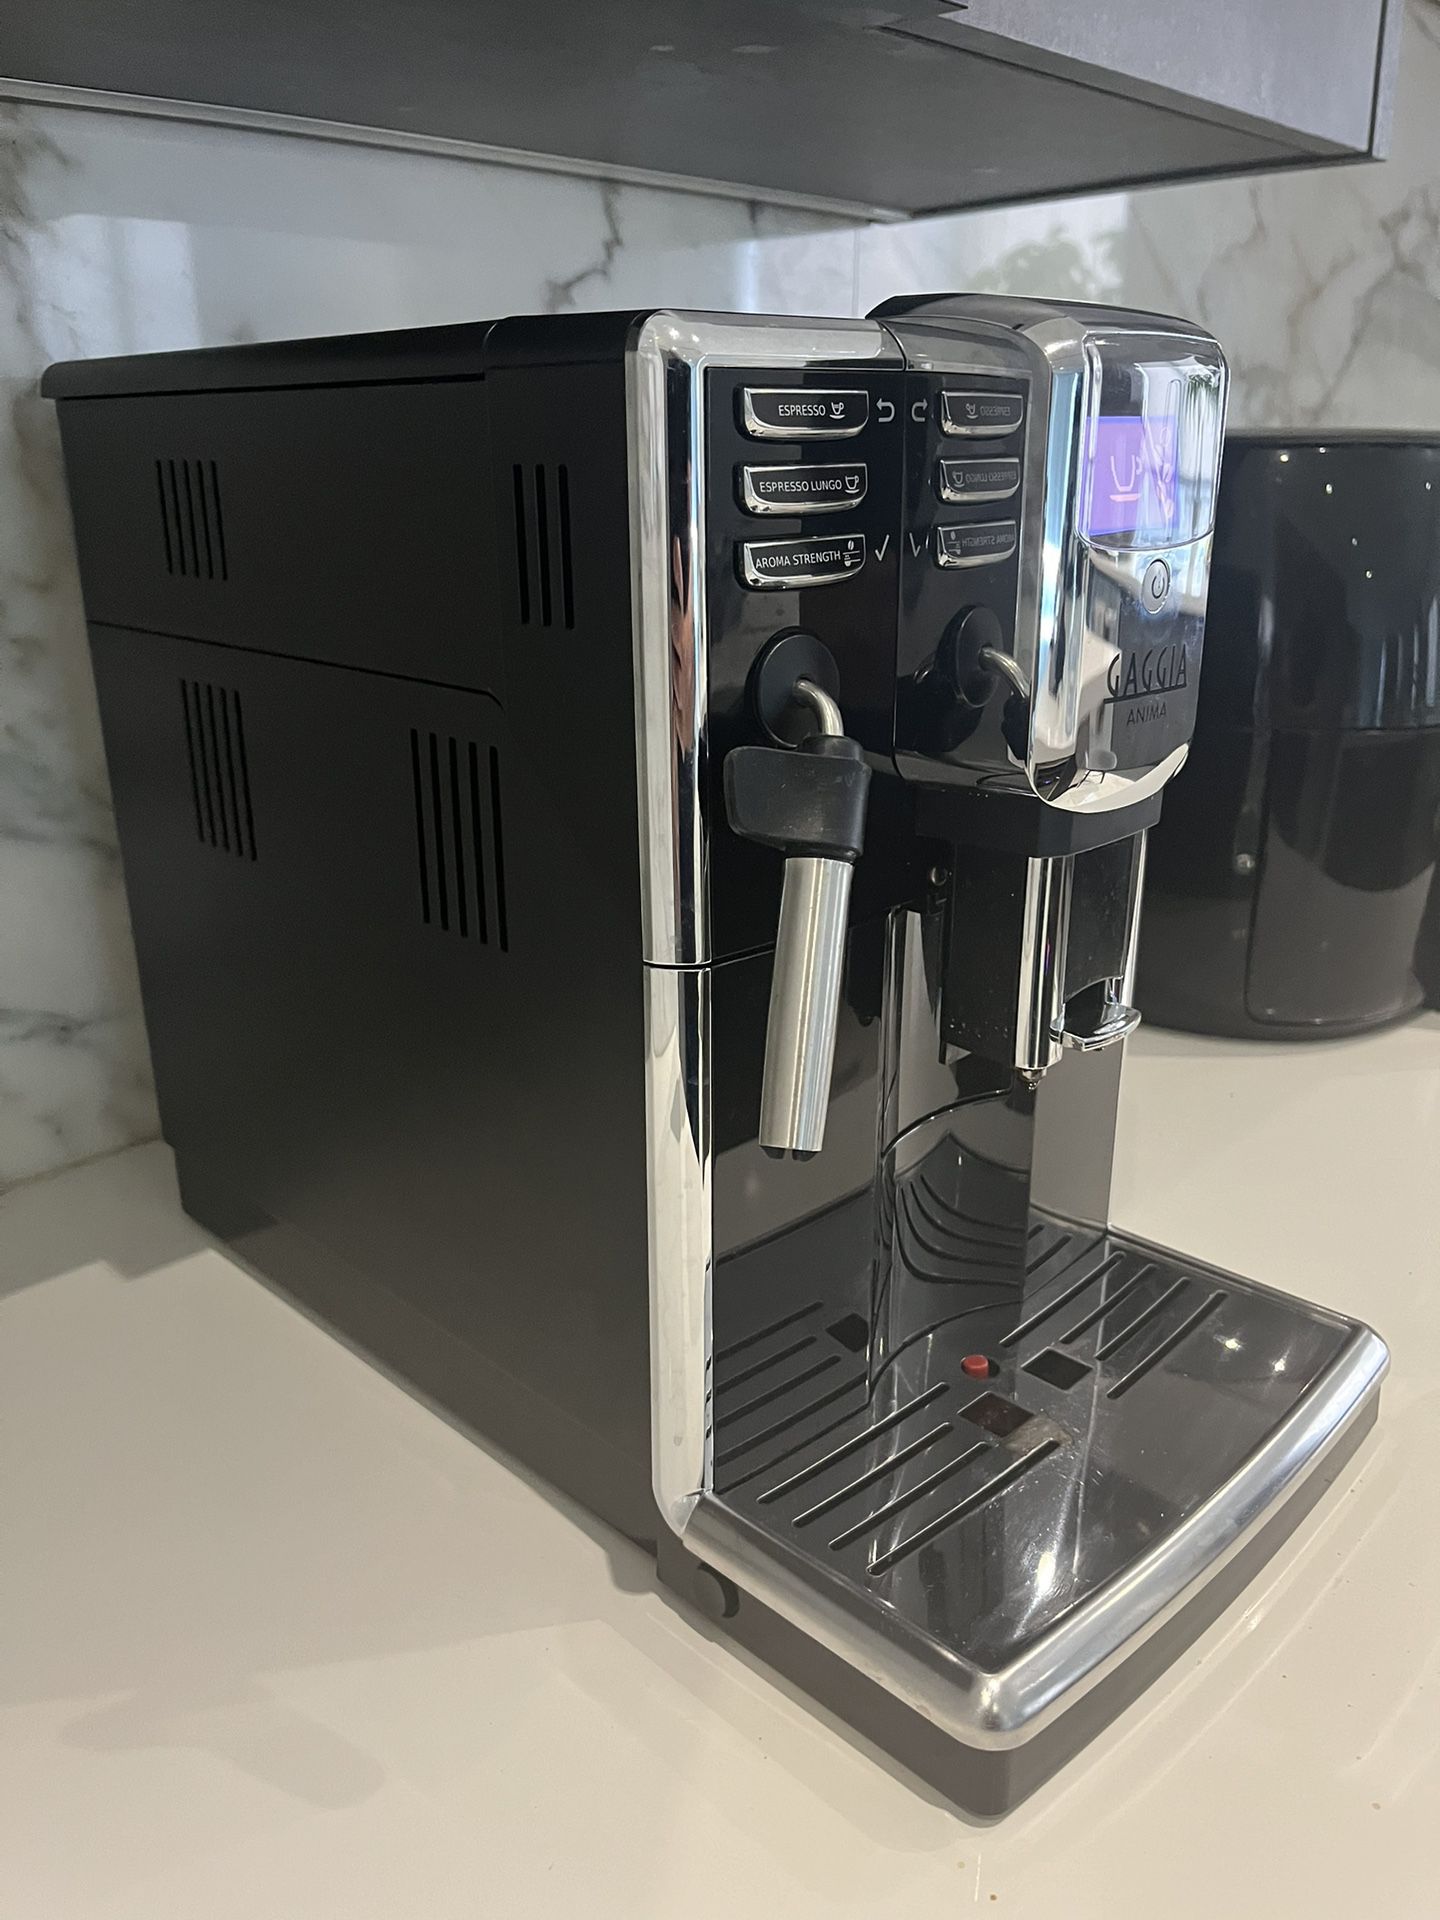 Gaggia Anima Coffee and Espresso Machine